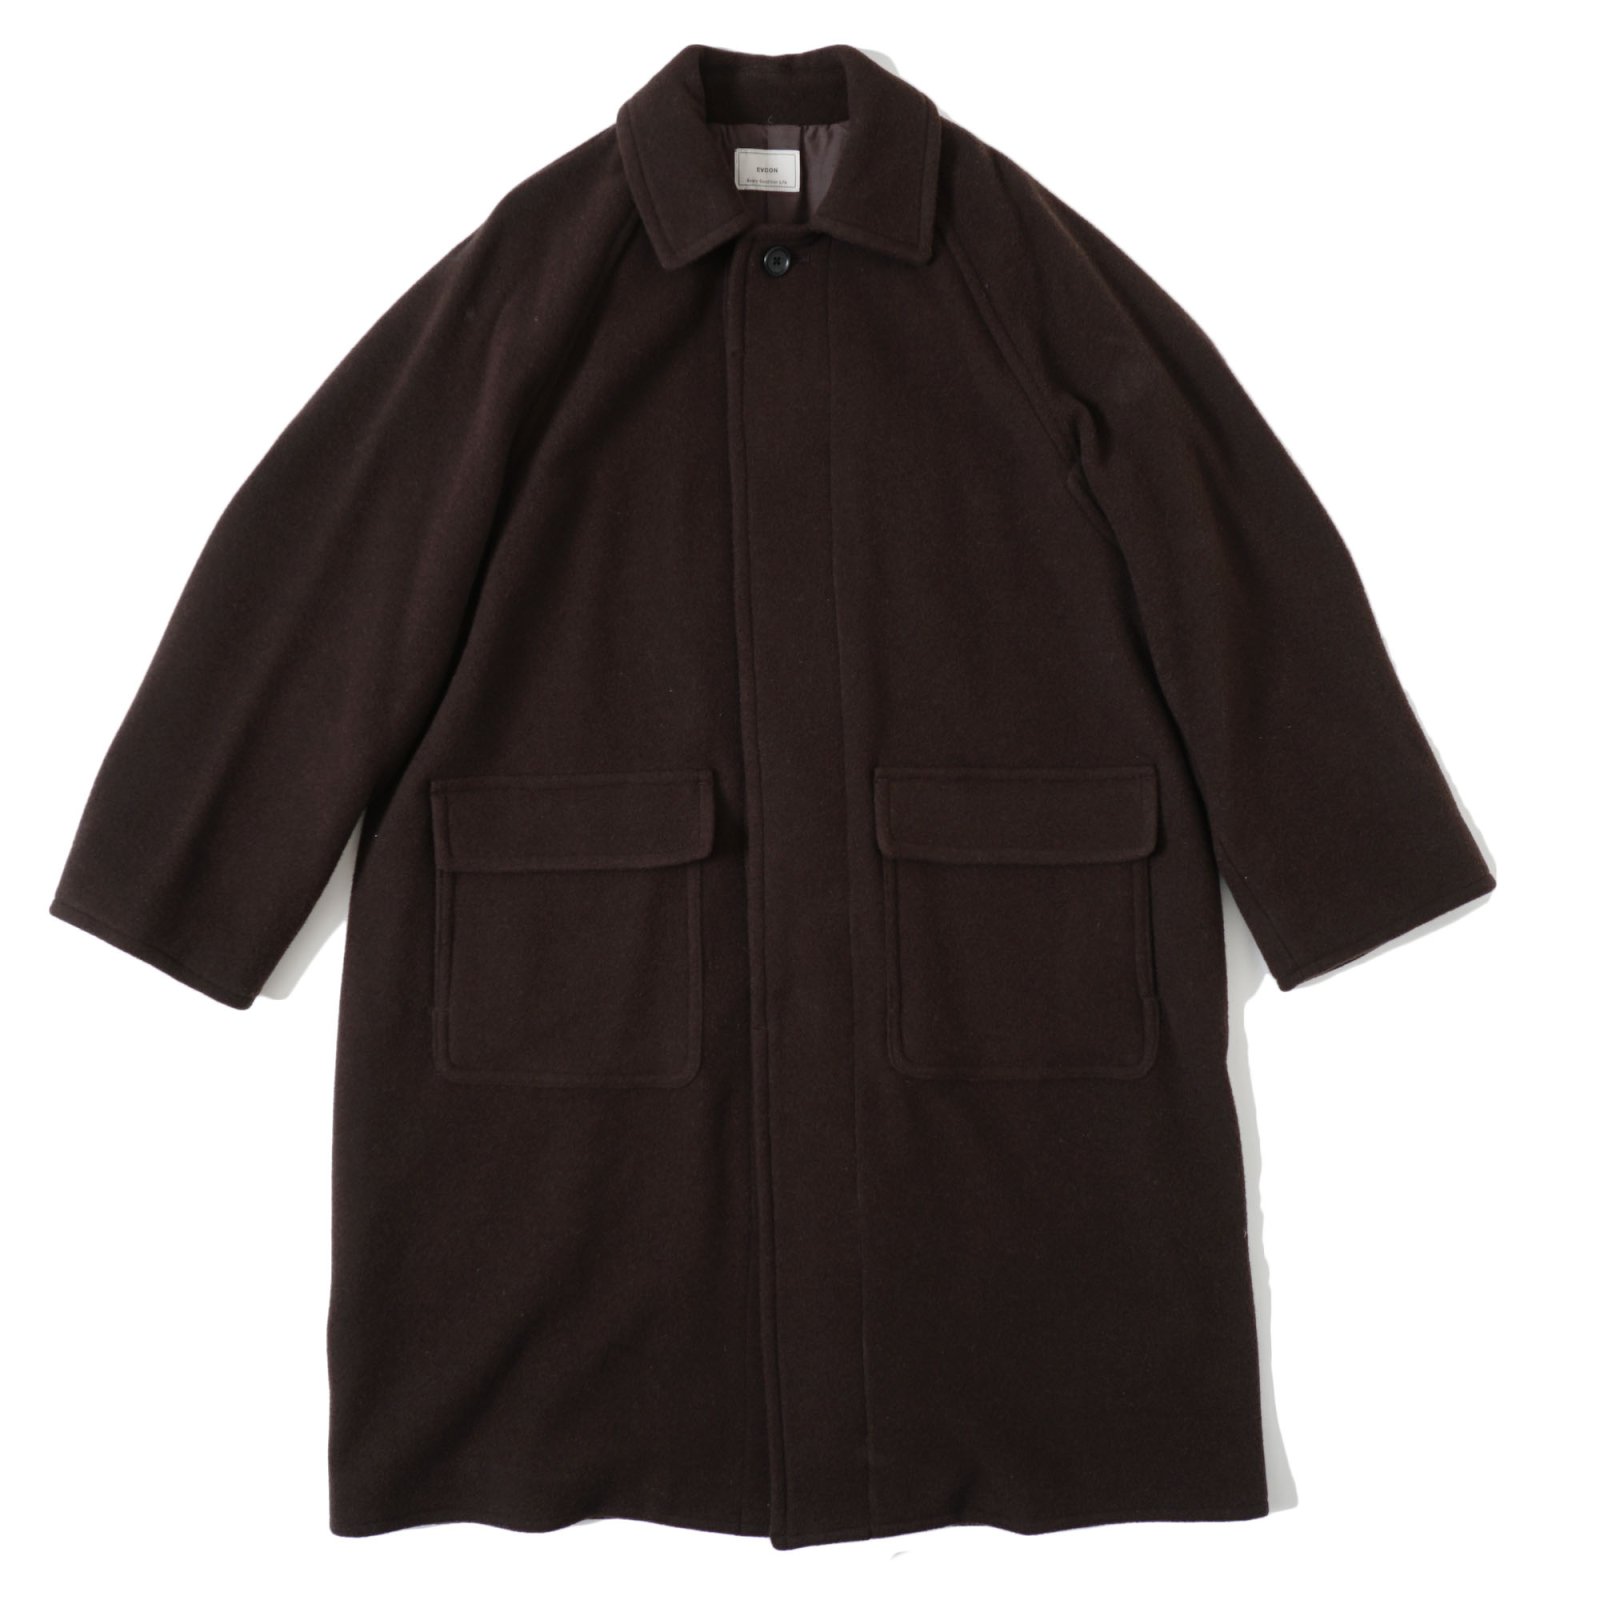 素材ウールevcon / wool stain collar coat - ロングコート